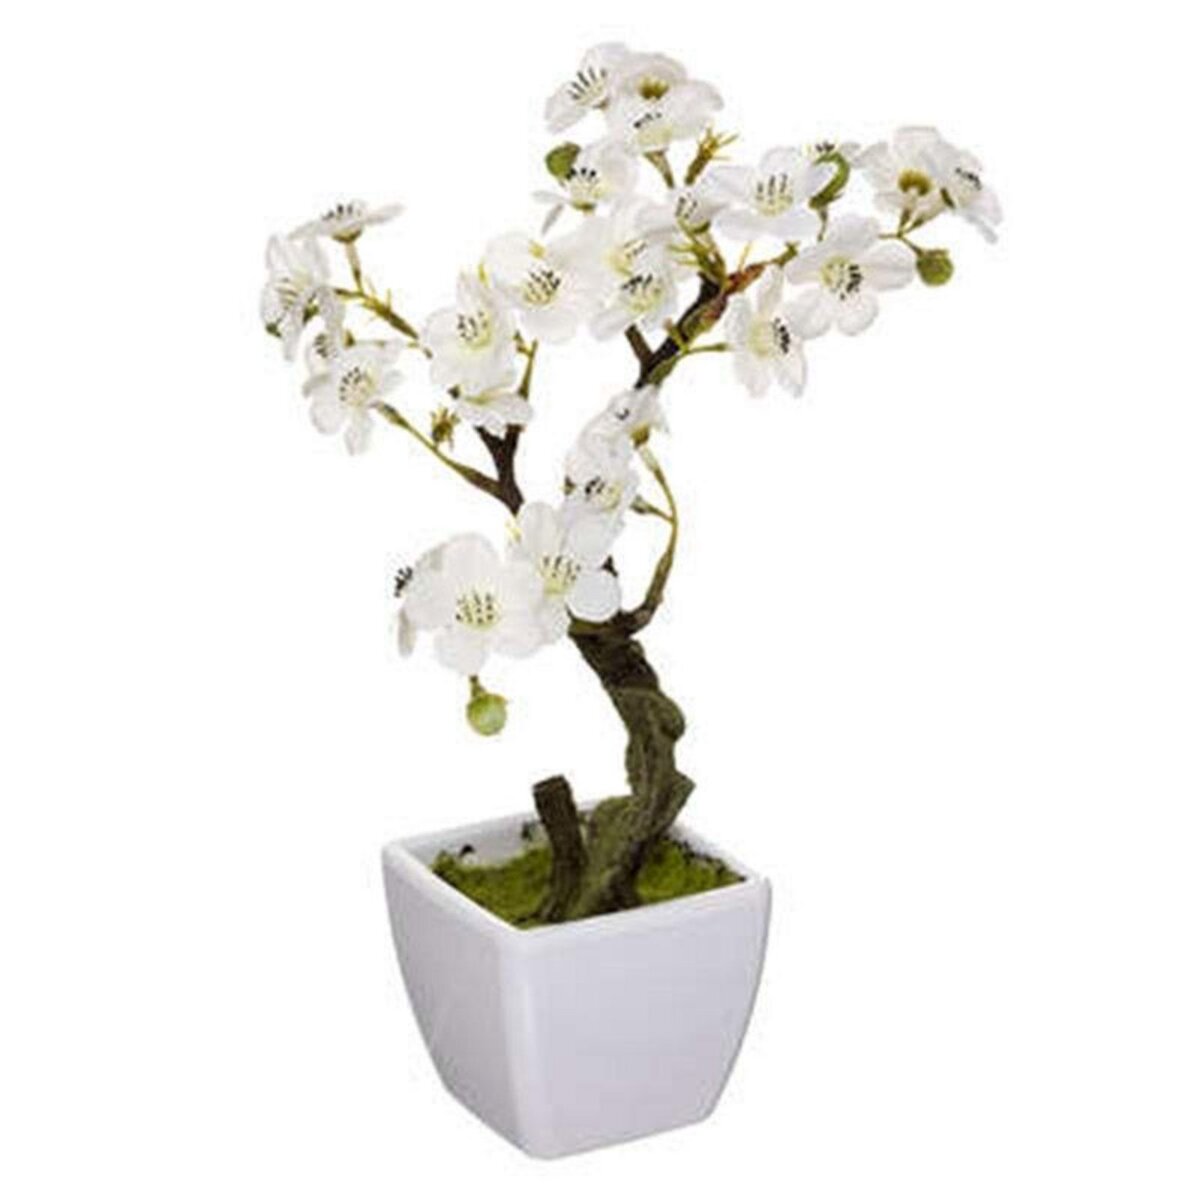  Plante Artificielle en Pot  Cerisier  26cm Blanc